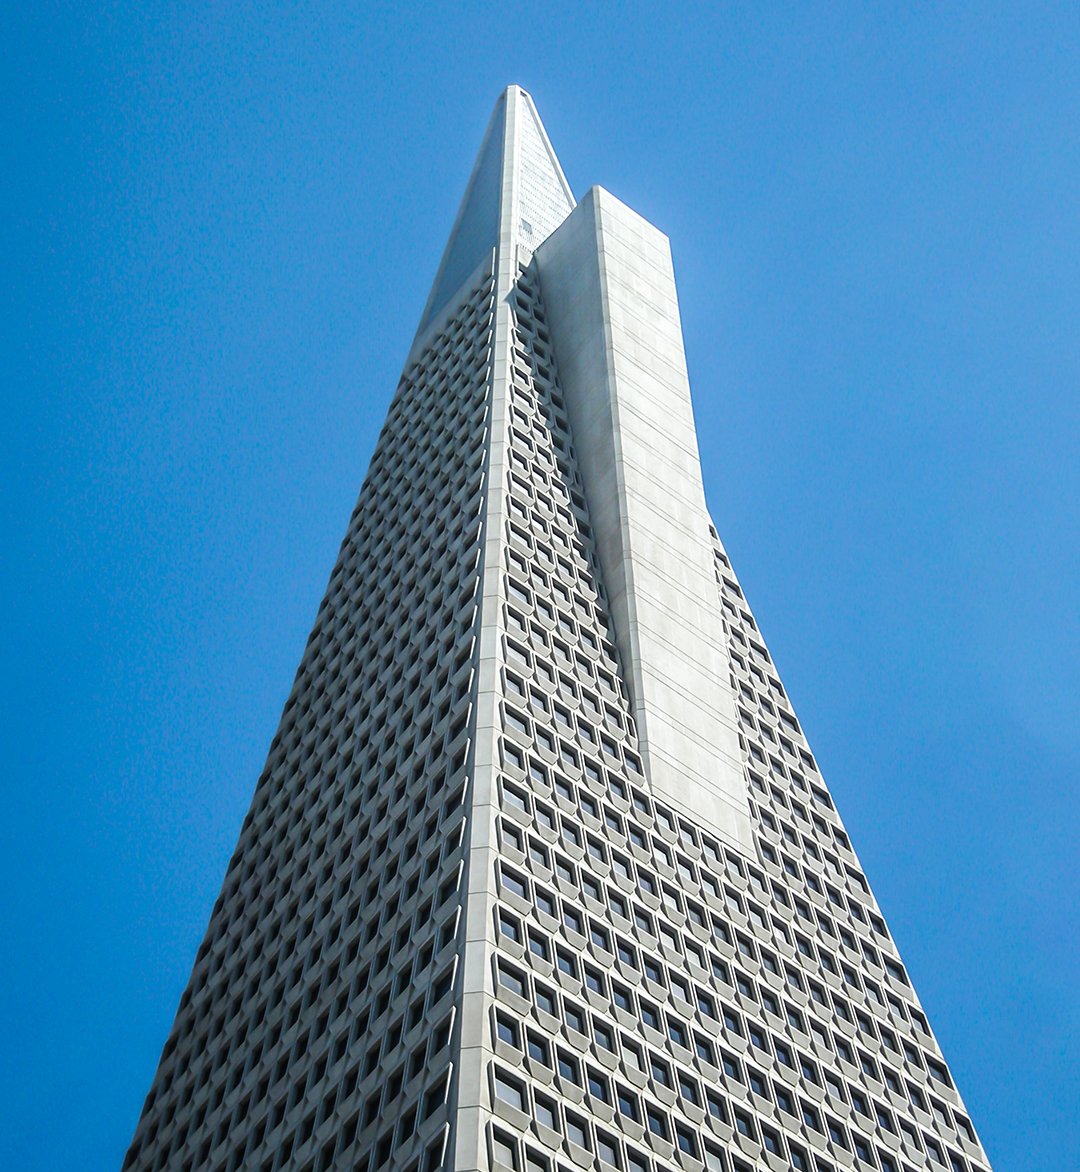 Transamerica Pyramid by William Pereira in San Francisco, 1969

#sanfrancisco #sanfranciscoarchitecture #sfarchitecture #facadelover #concrete #brutalist #pyramid #skyscraper